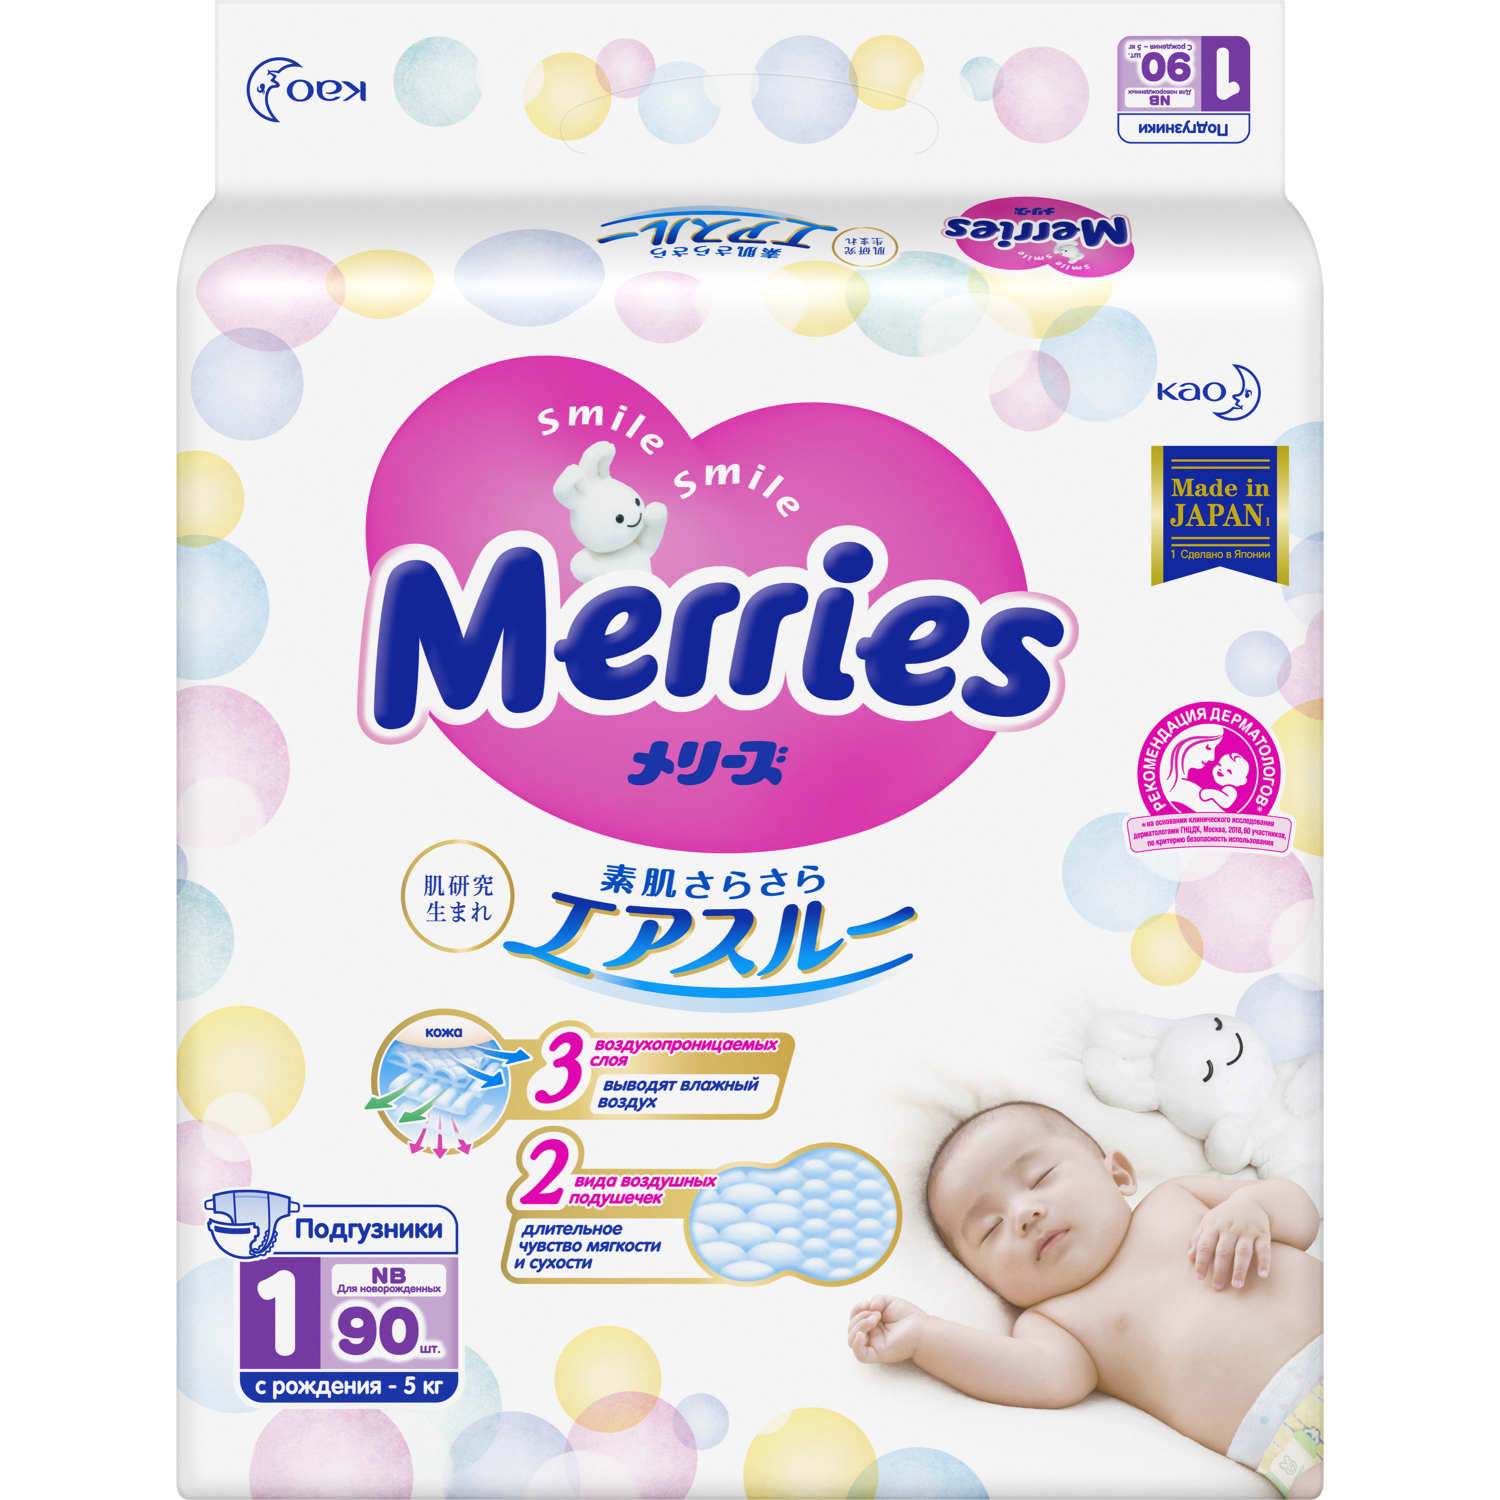 Купить Merries Diapers, Подгузники Merries для новорожденных NB (0-5 кг), 90 шт.,